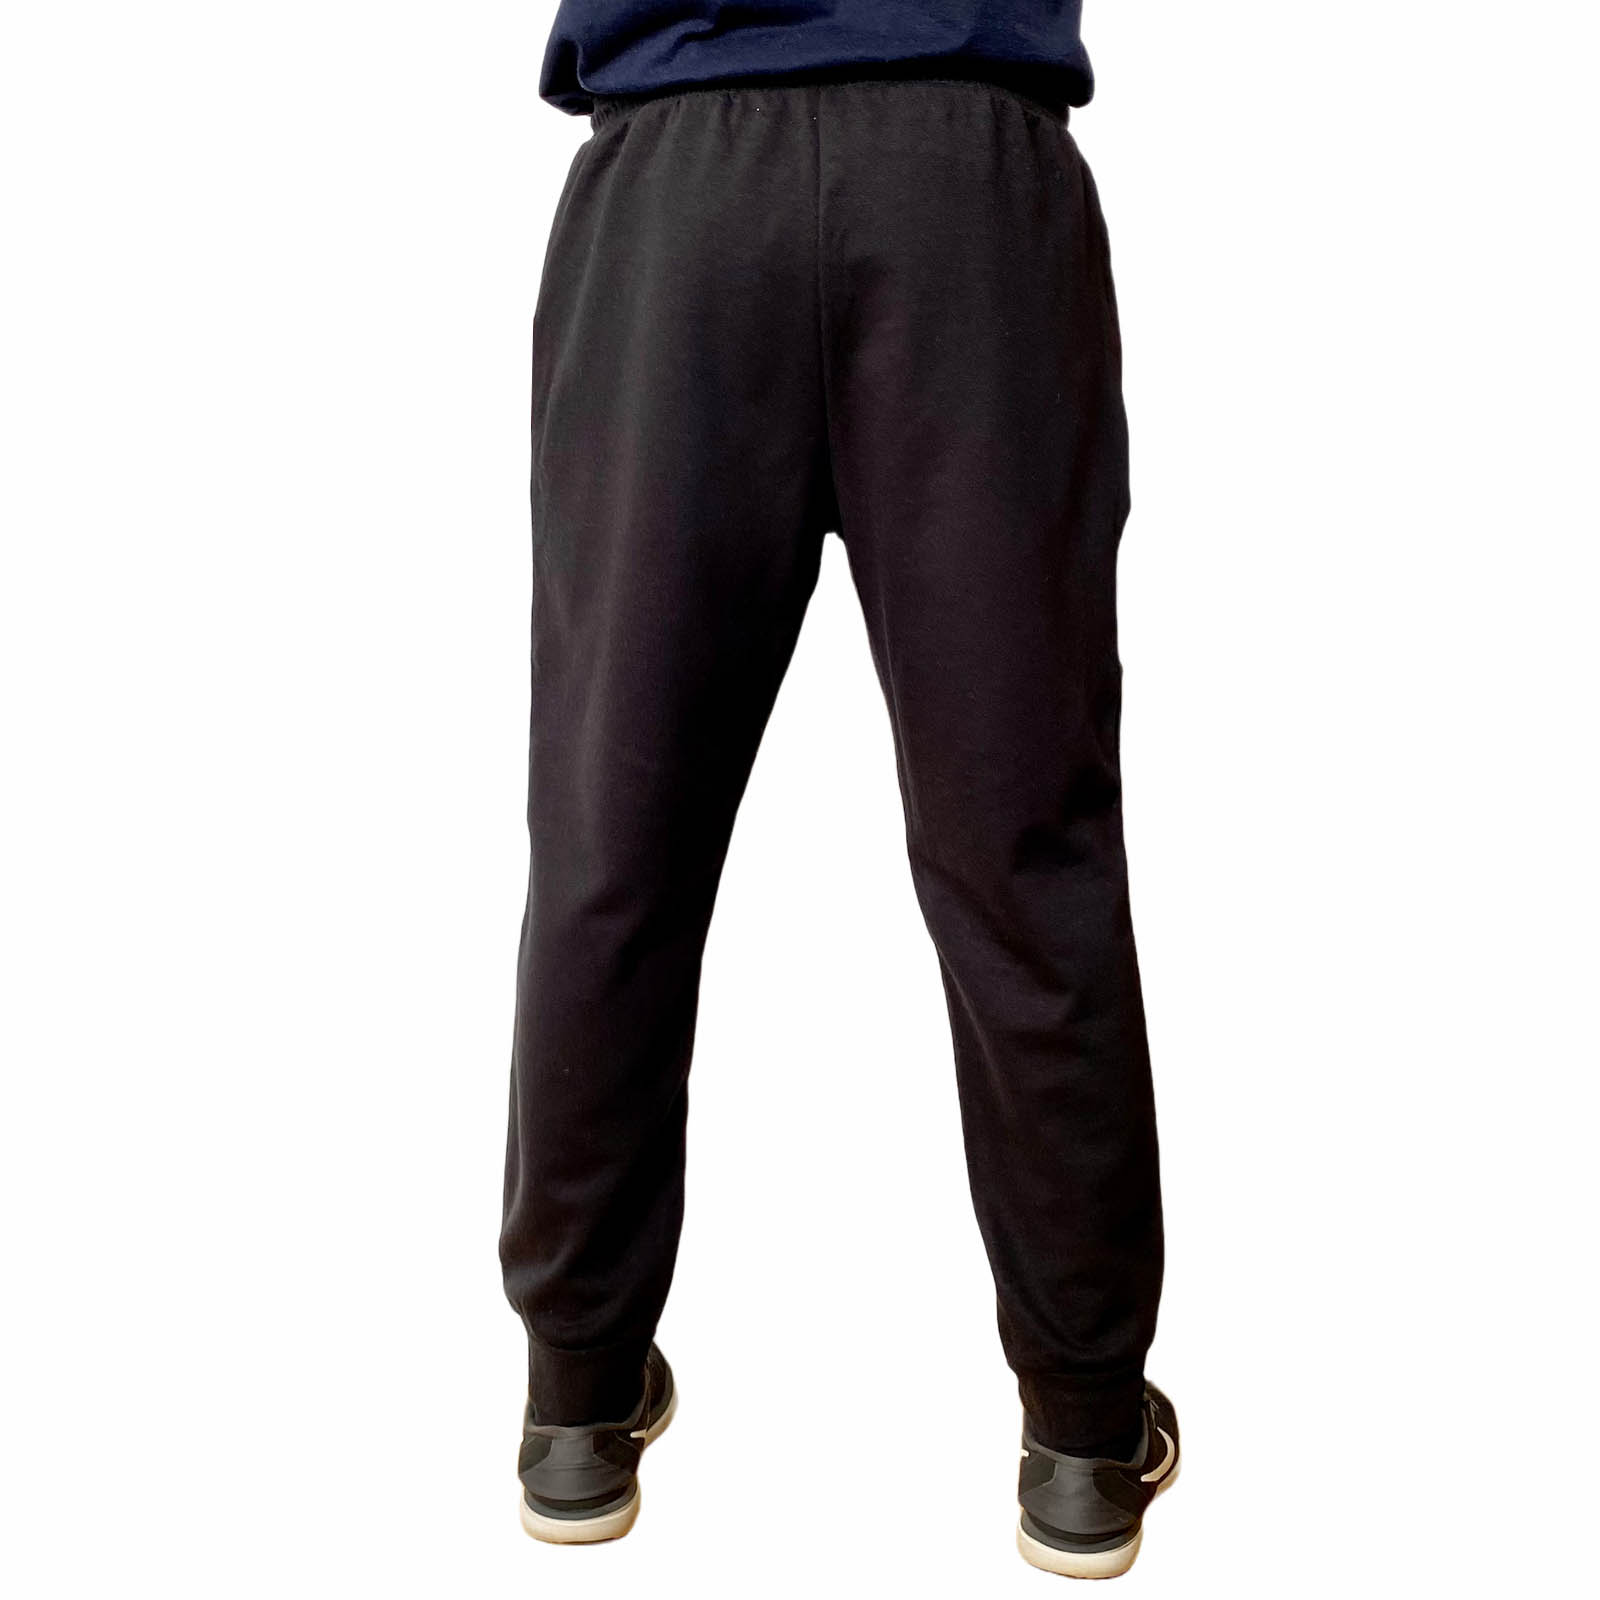 Заказать в интернет магазине спортивные штаны мужские 